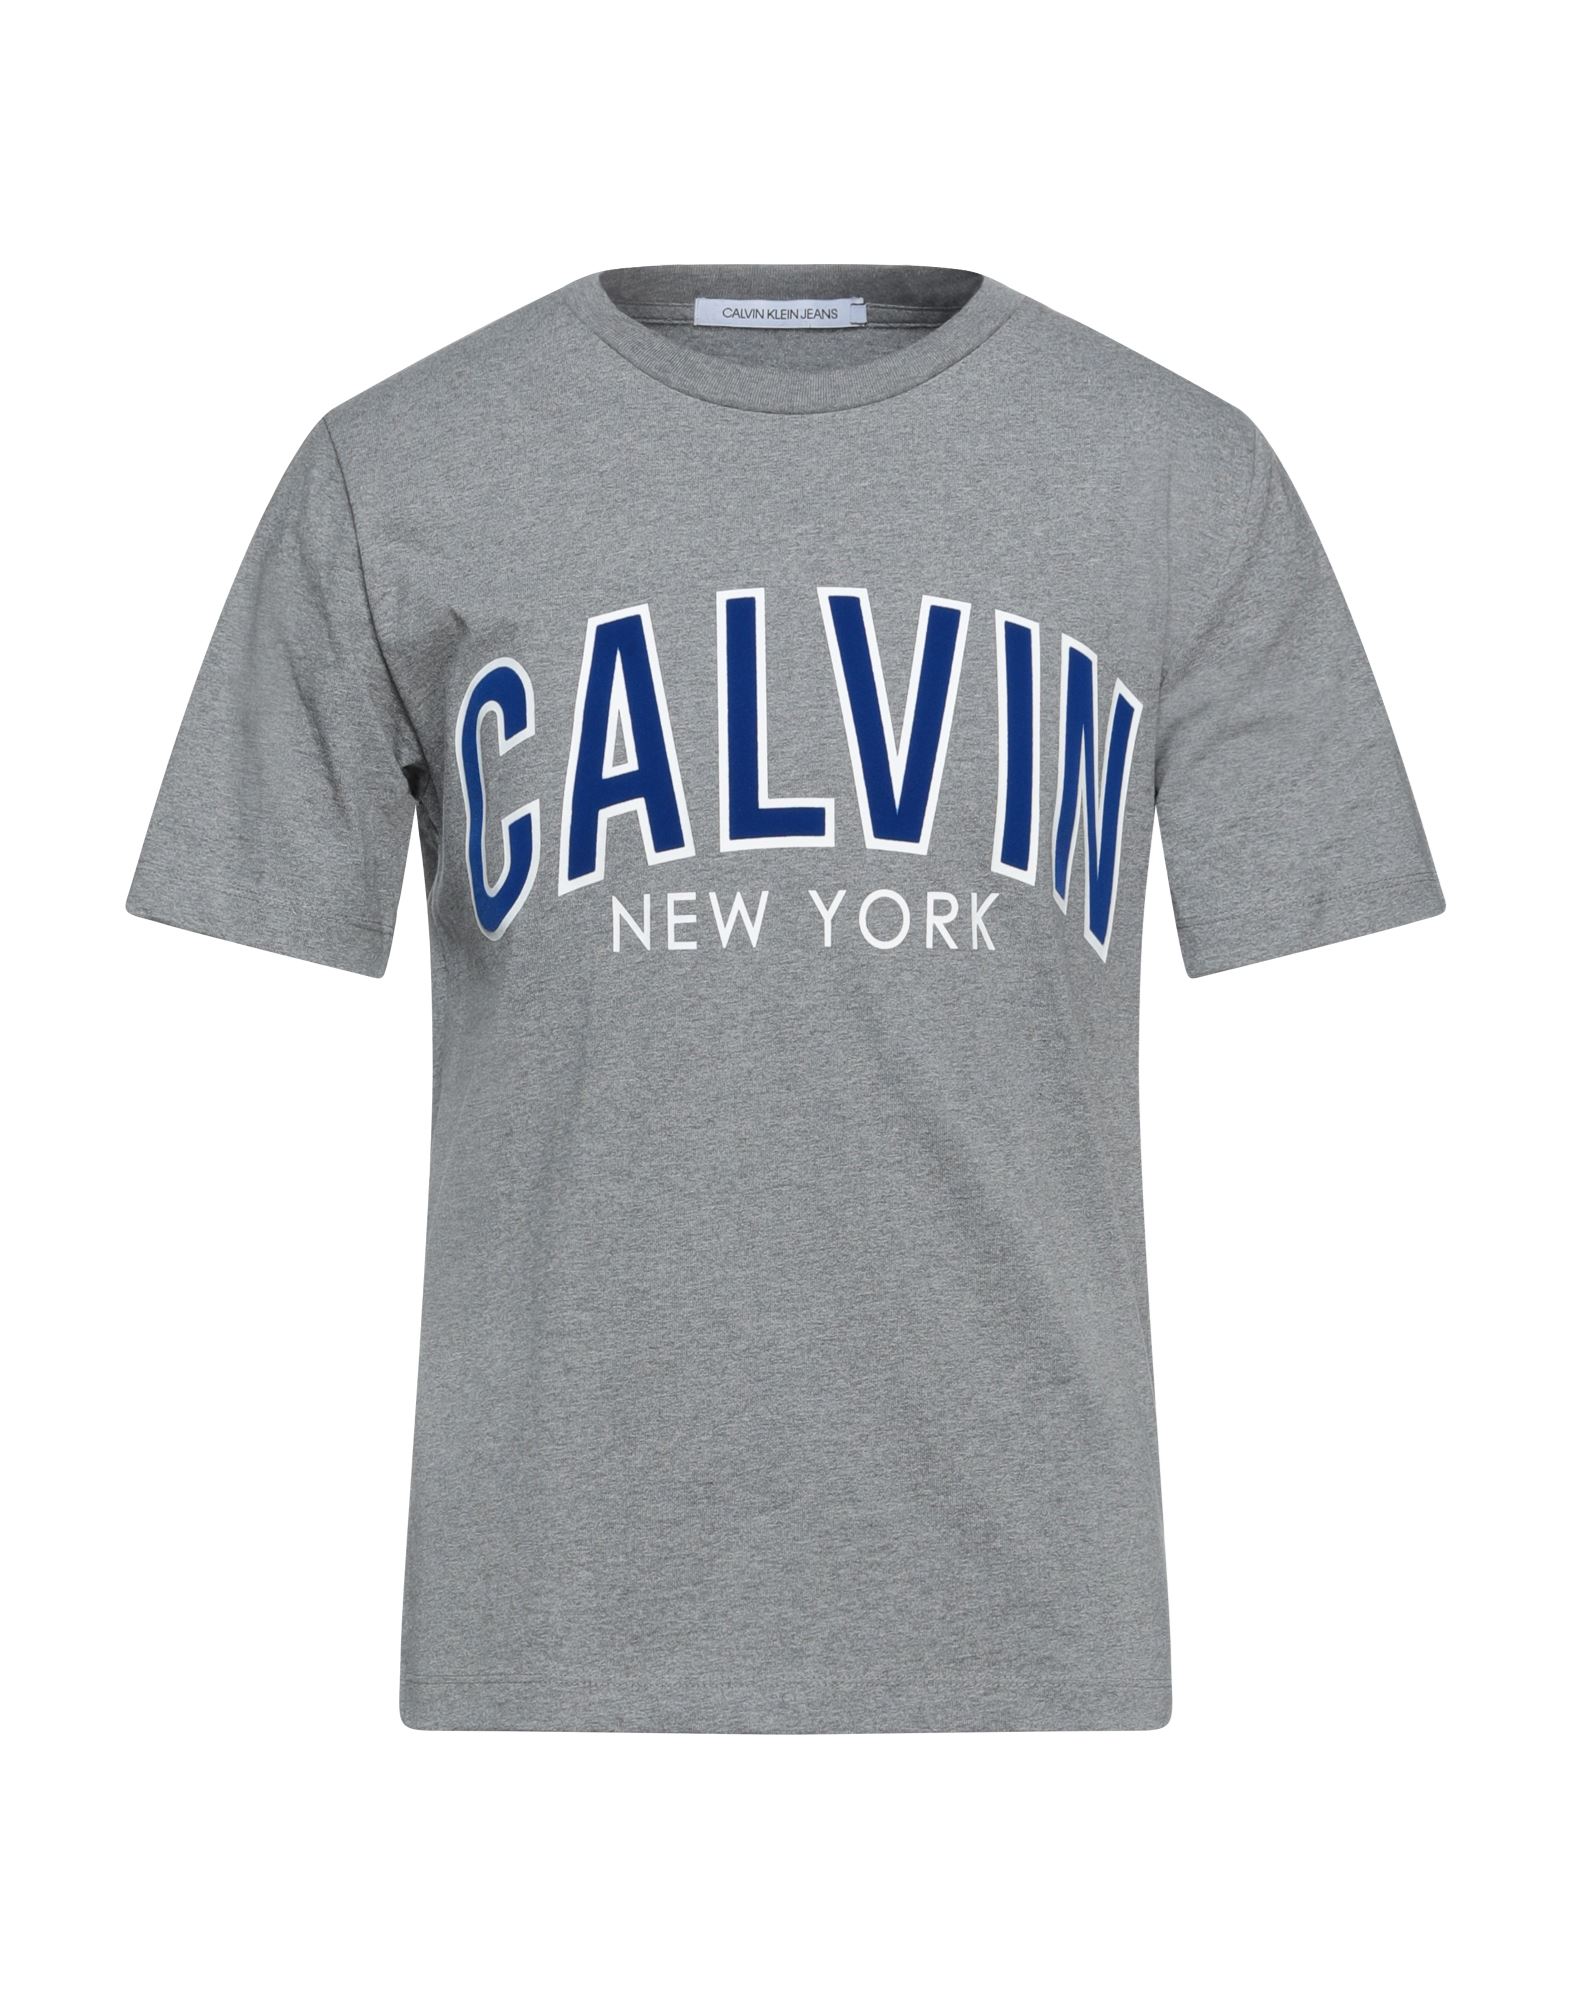 CALVIN KLEIN JEANS Футболка футболка calvin klein jeans calvin klein jeans ca939emapqx5